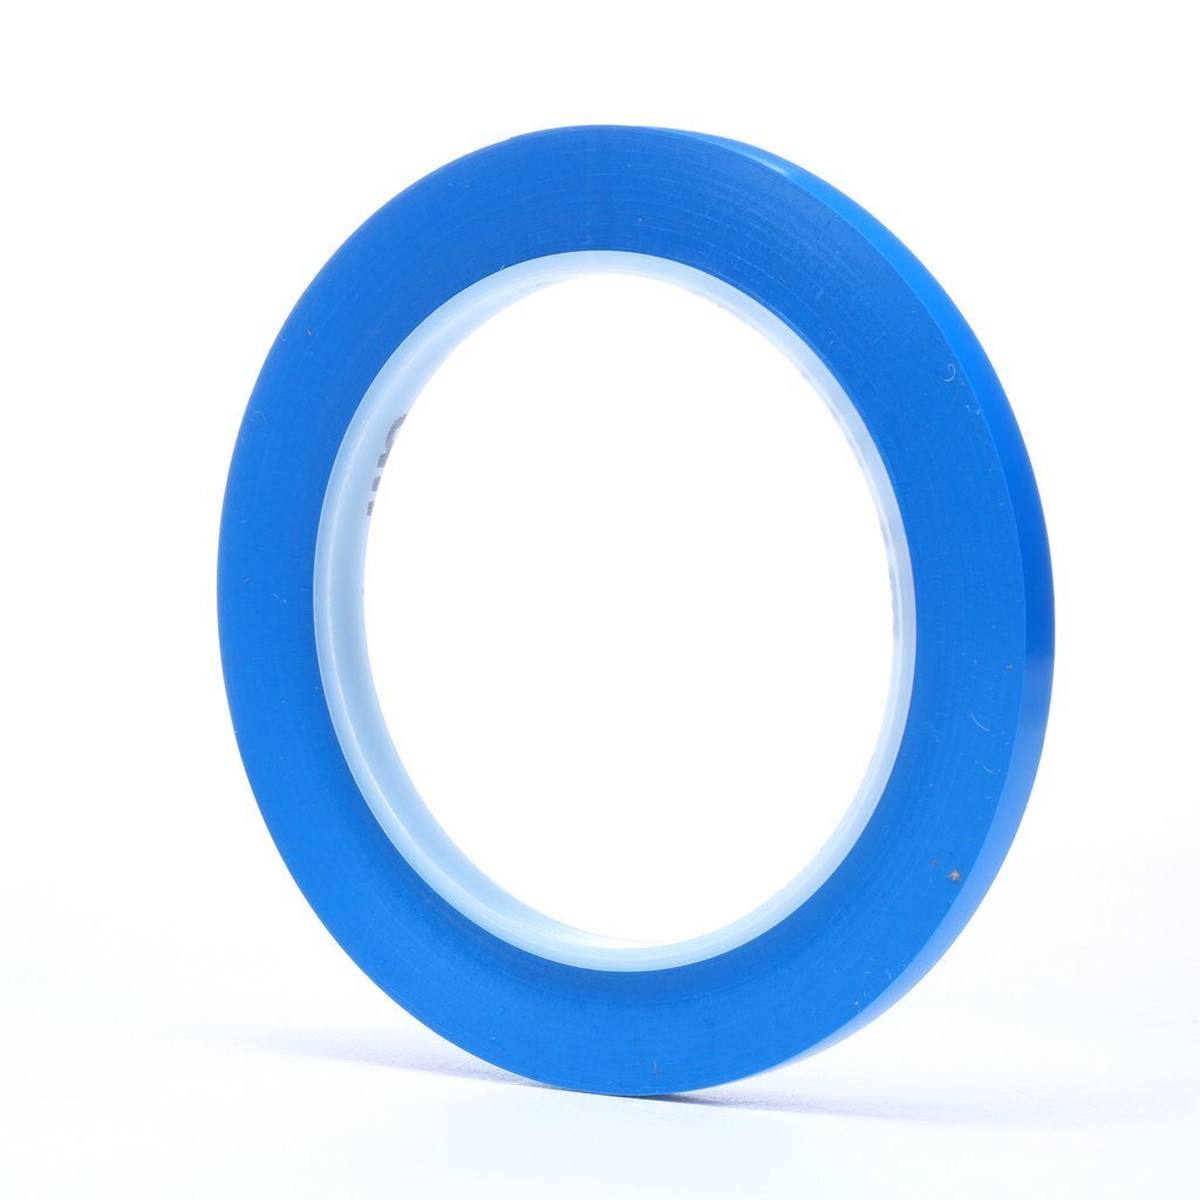 Nastro adesivo 3M in PVC morbido 471 F, blu, 6 mm x 33 m, 0,13 mm